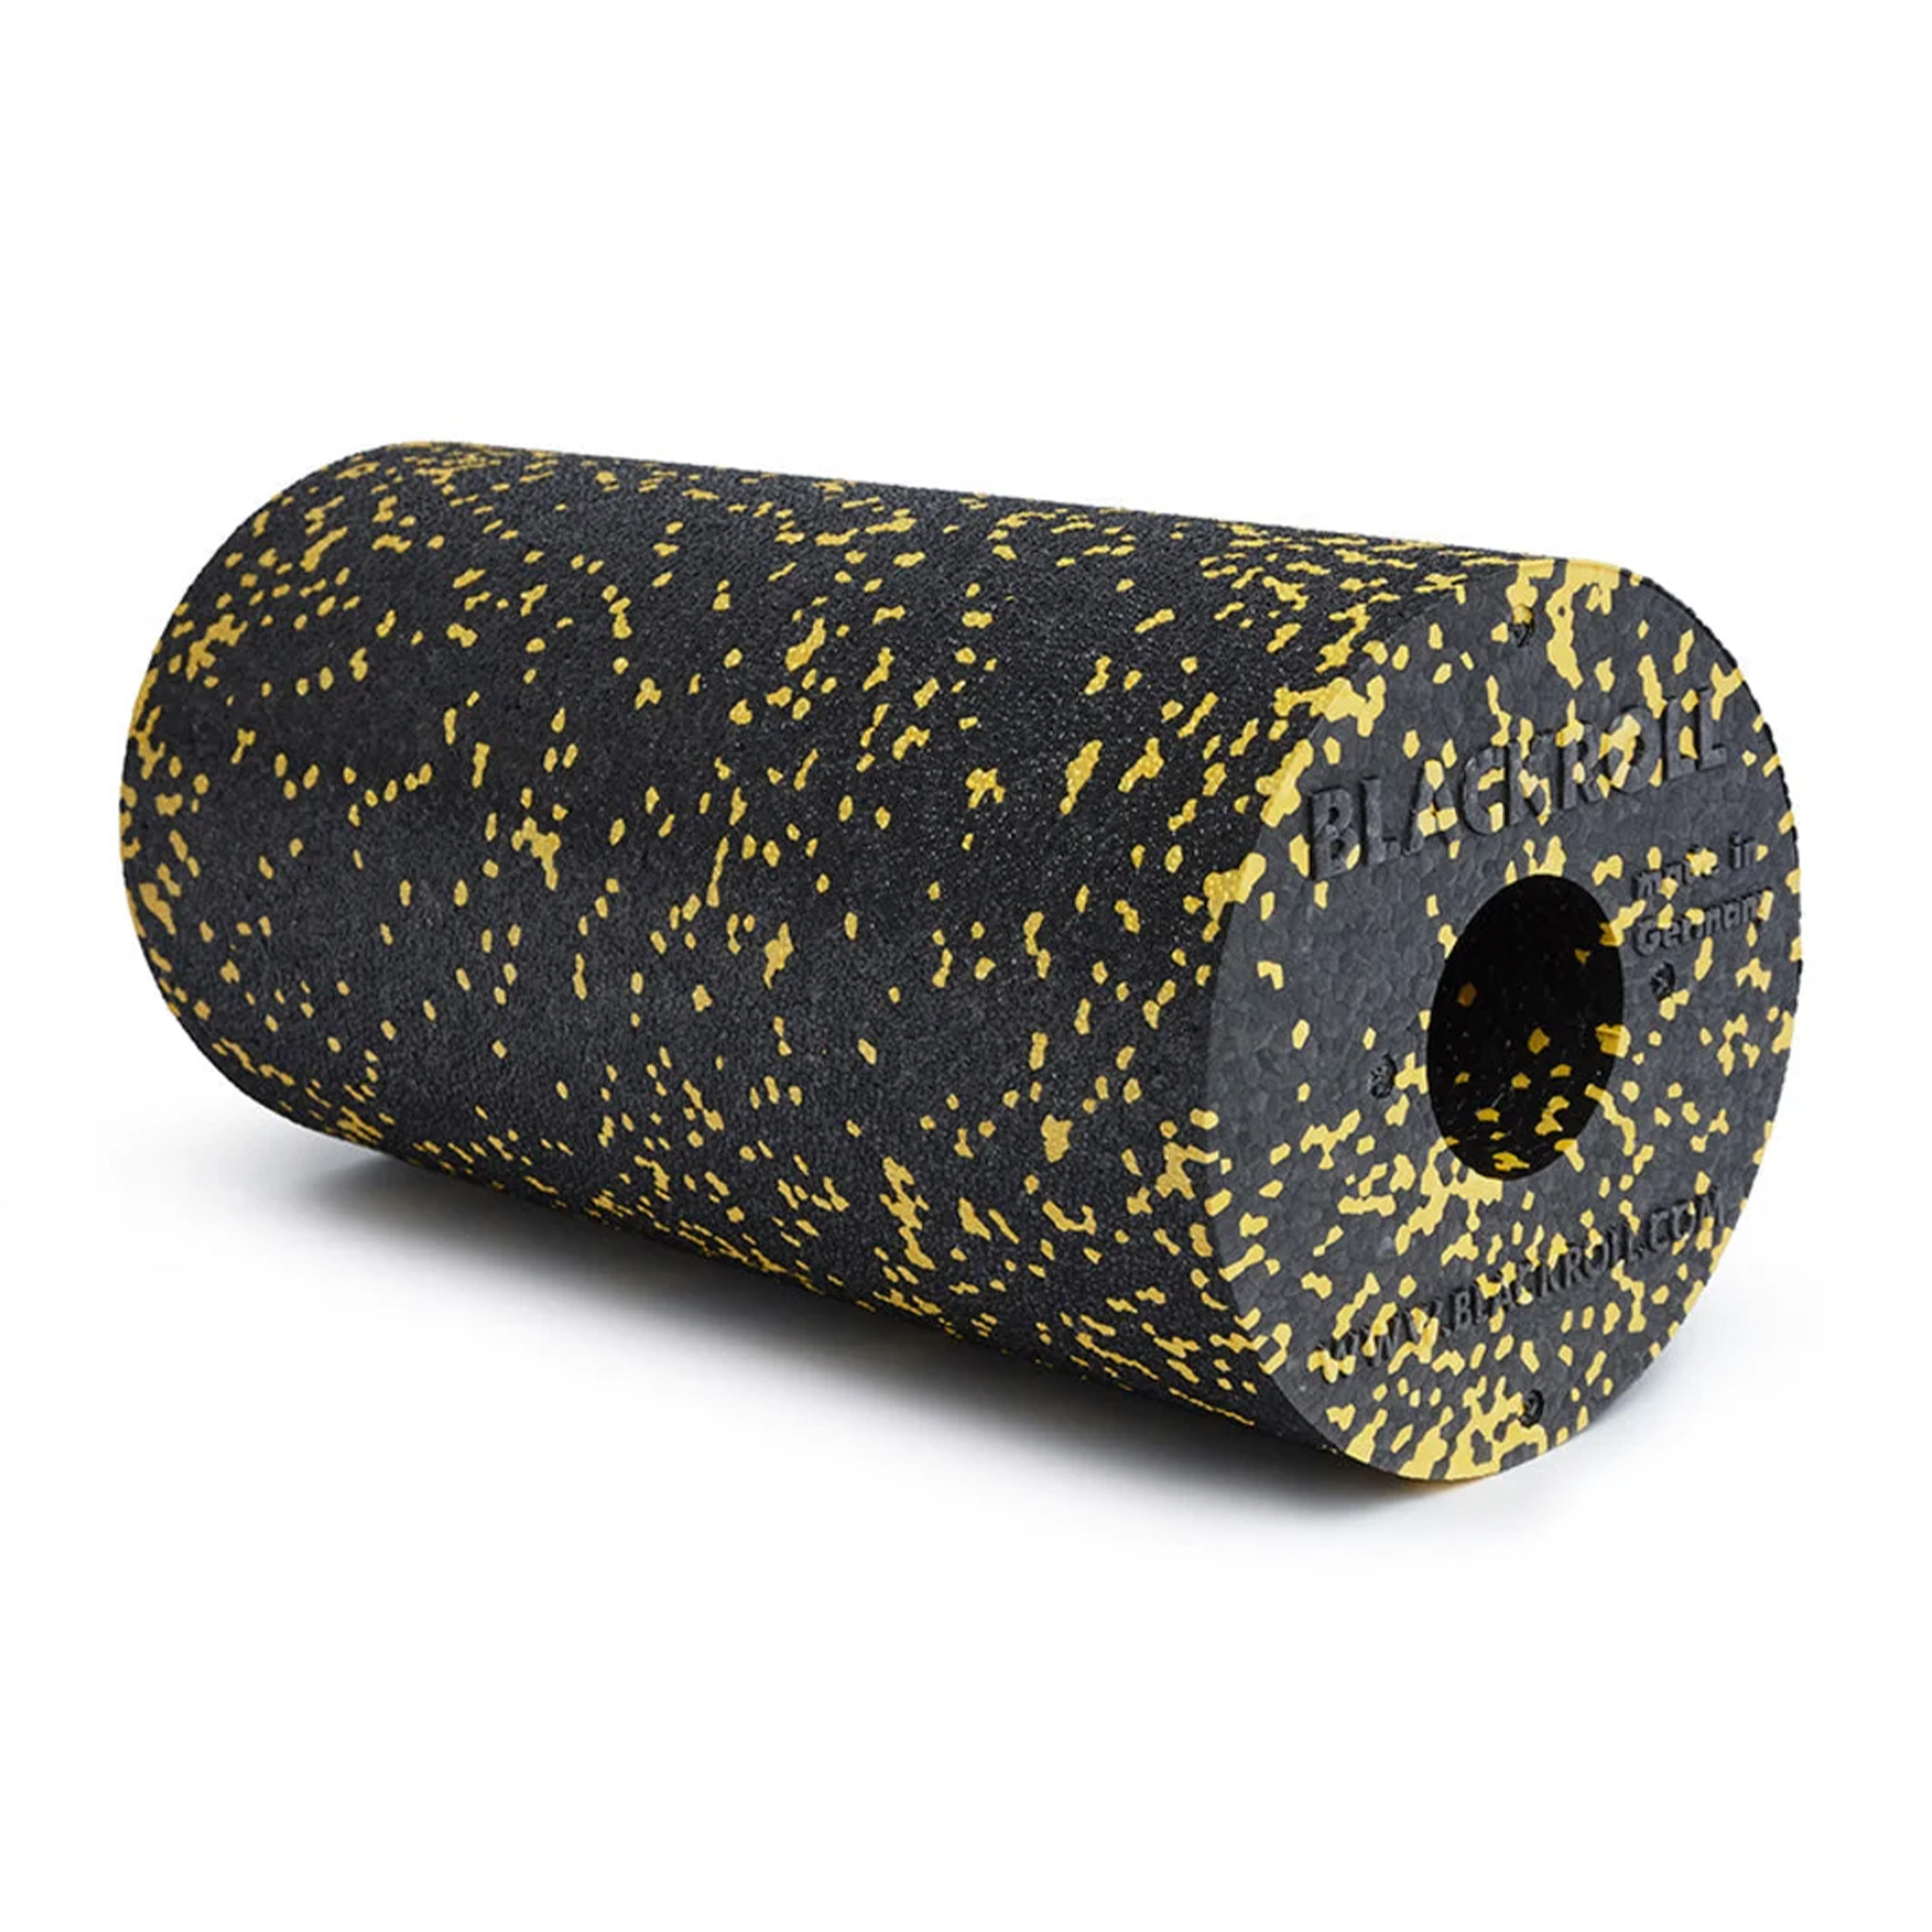 Brug Blackroll Standard Foam Roller - Sort/gul - 30 x 15 cm til en forbedret oplevelse